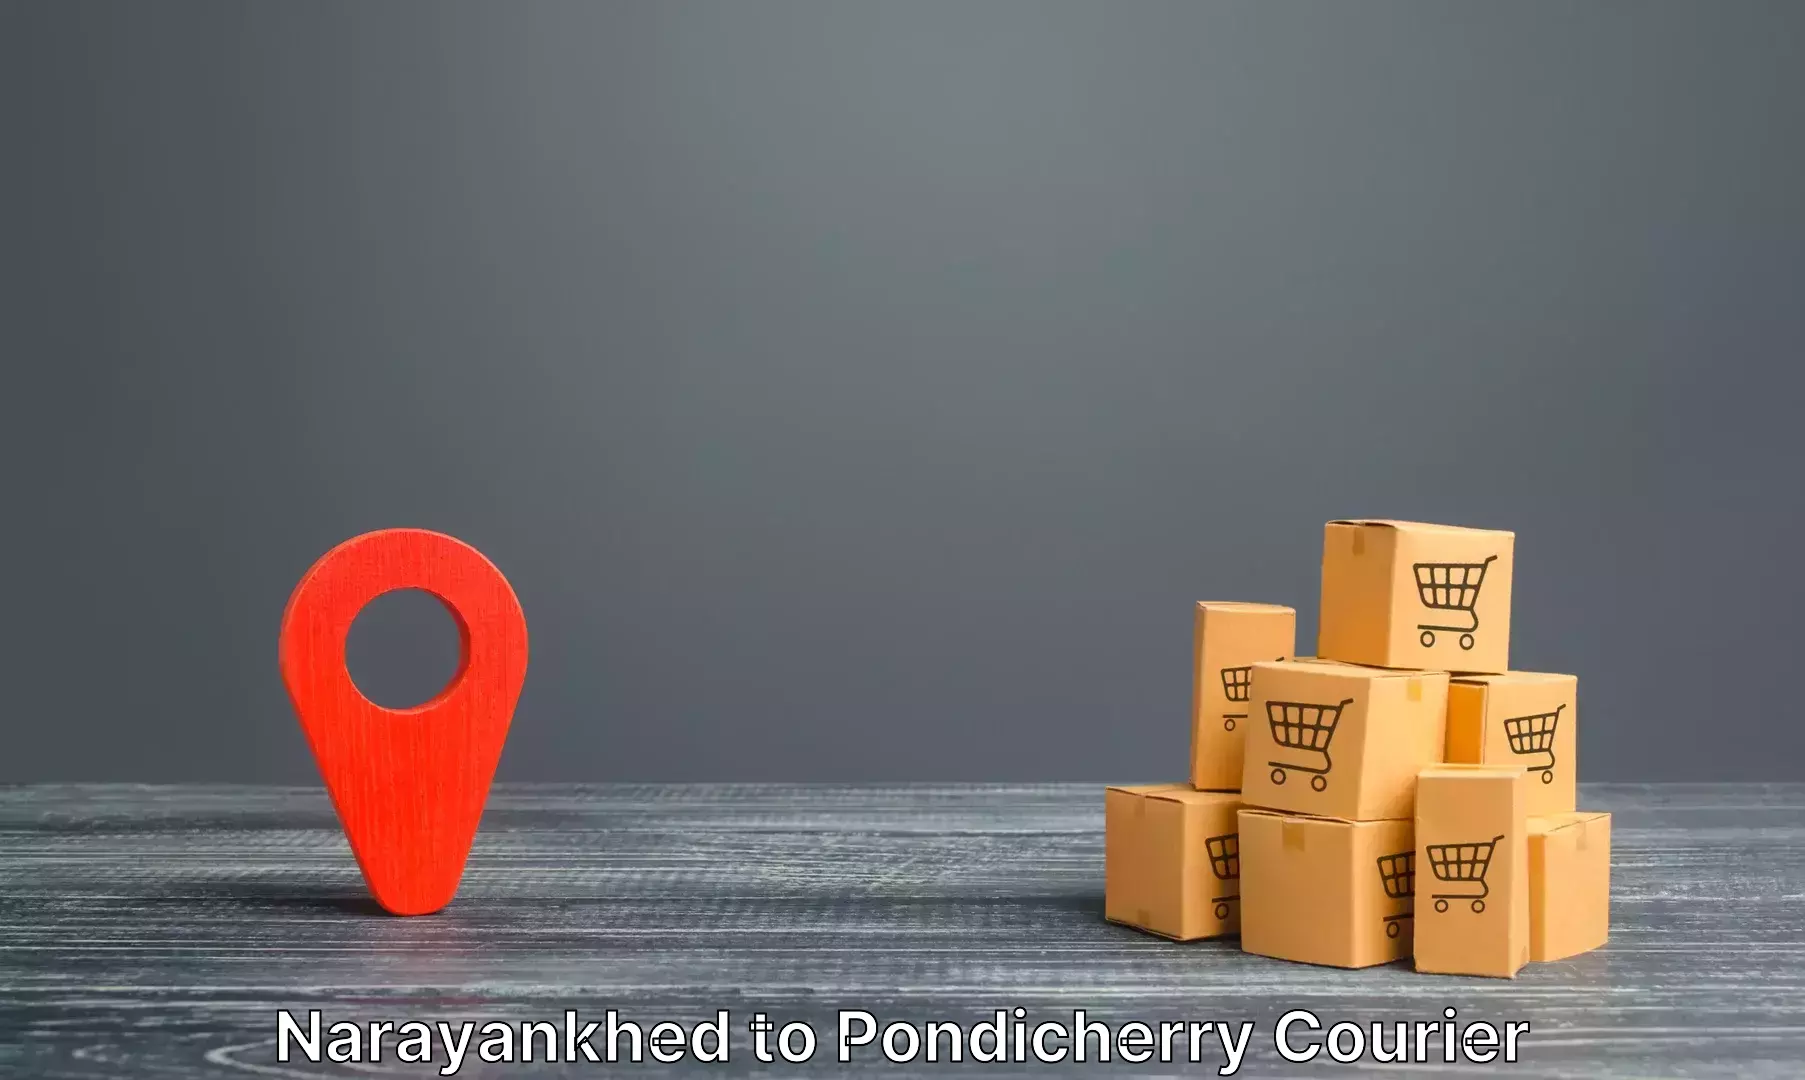 Luggage forwarding service Narayankhed to Pondicherry University